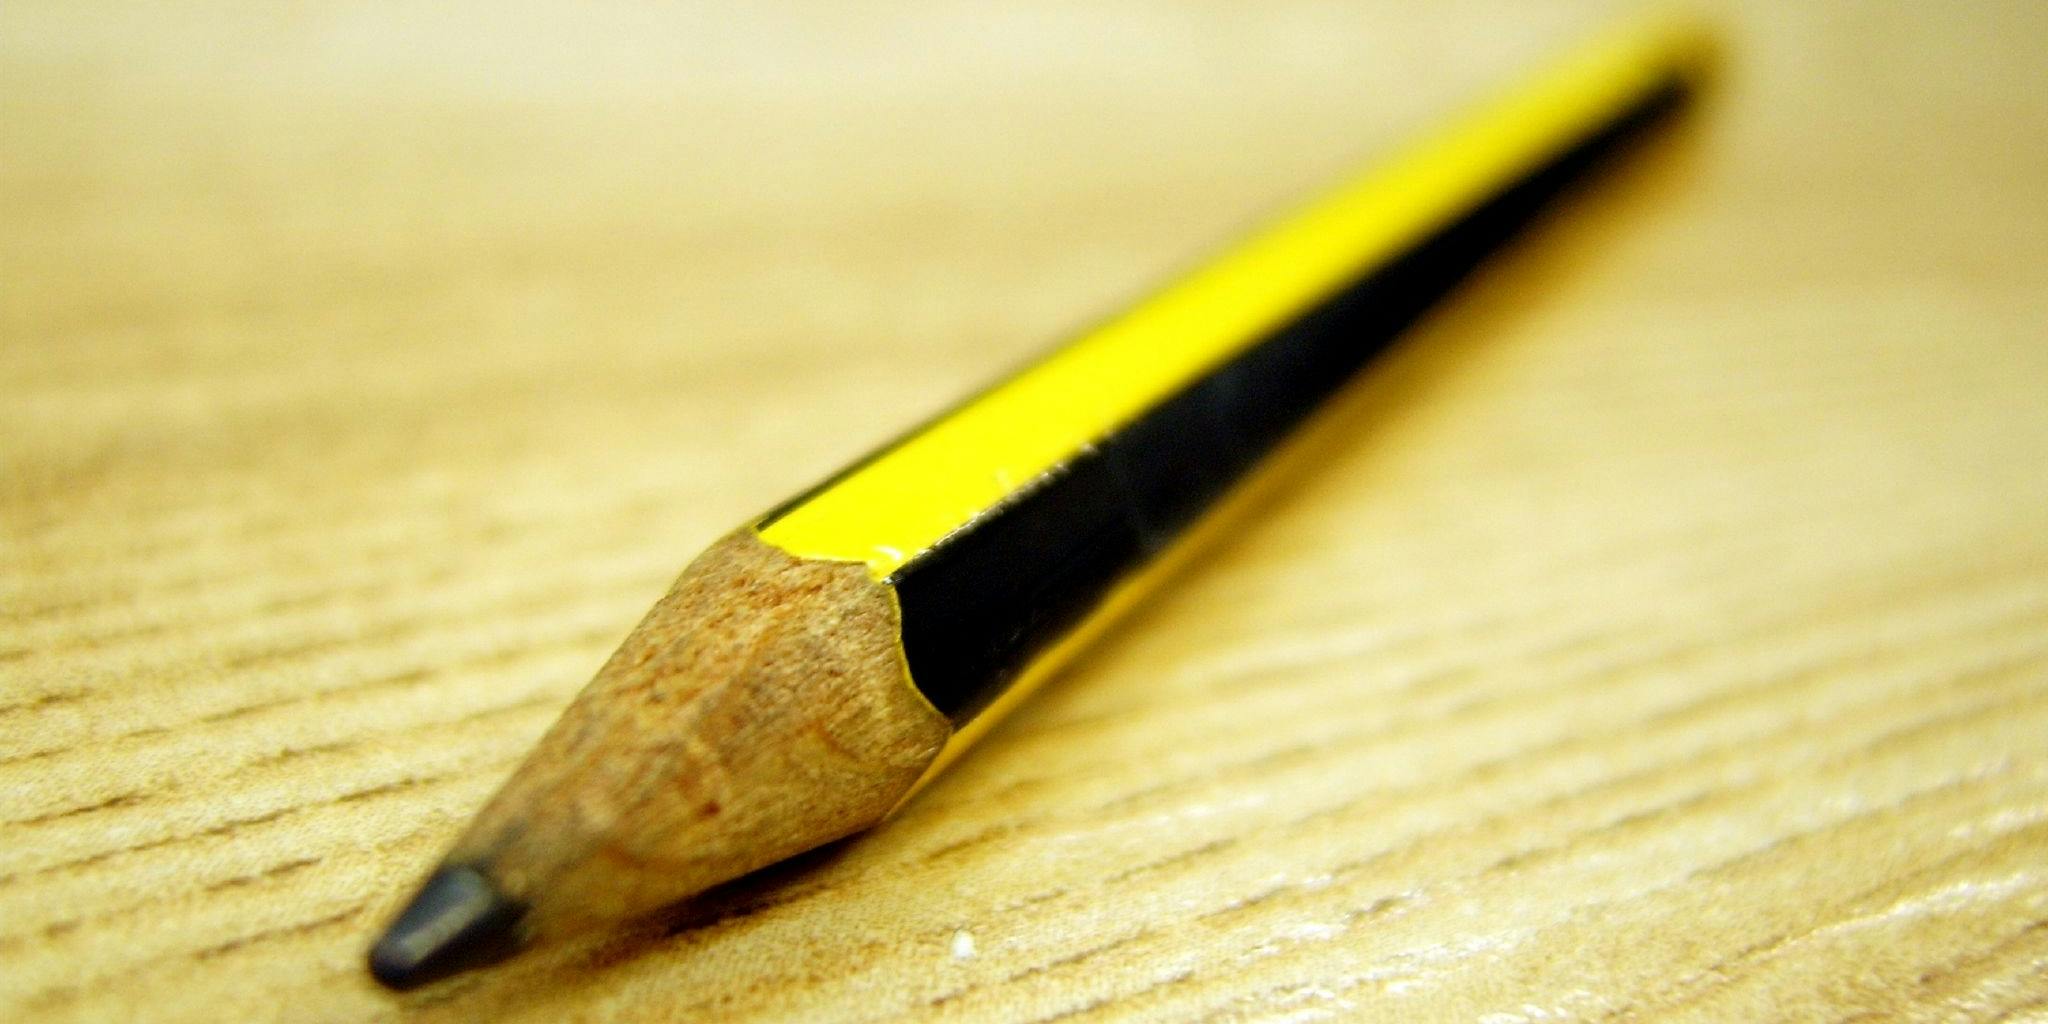 Used pencil